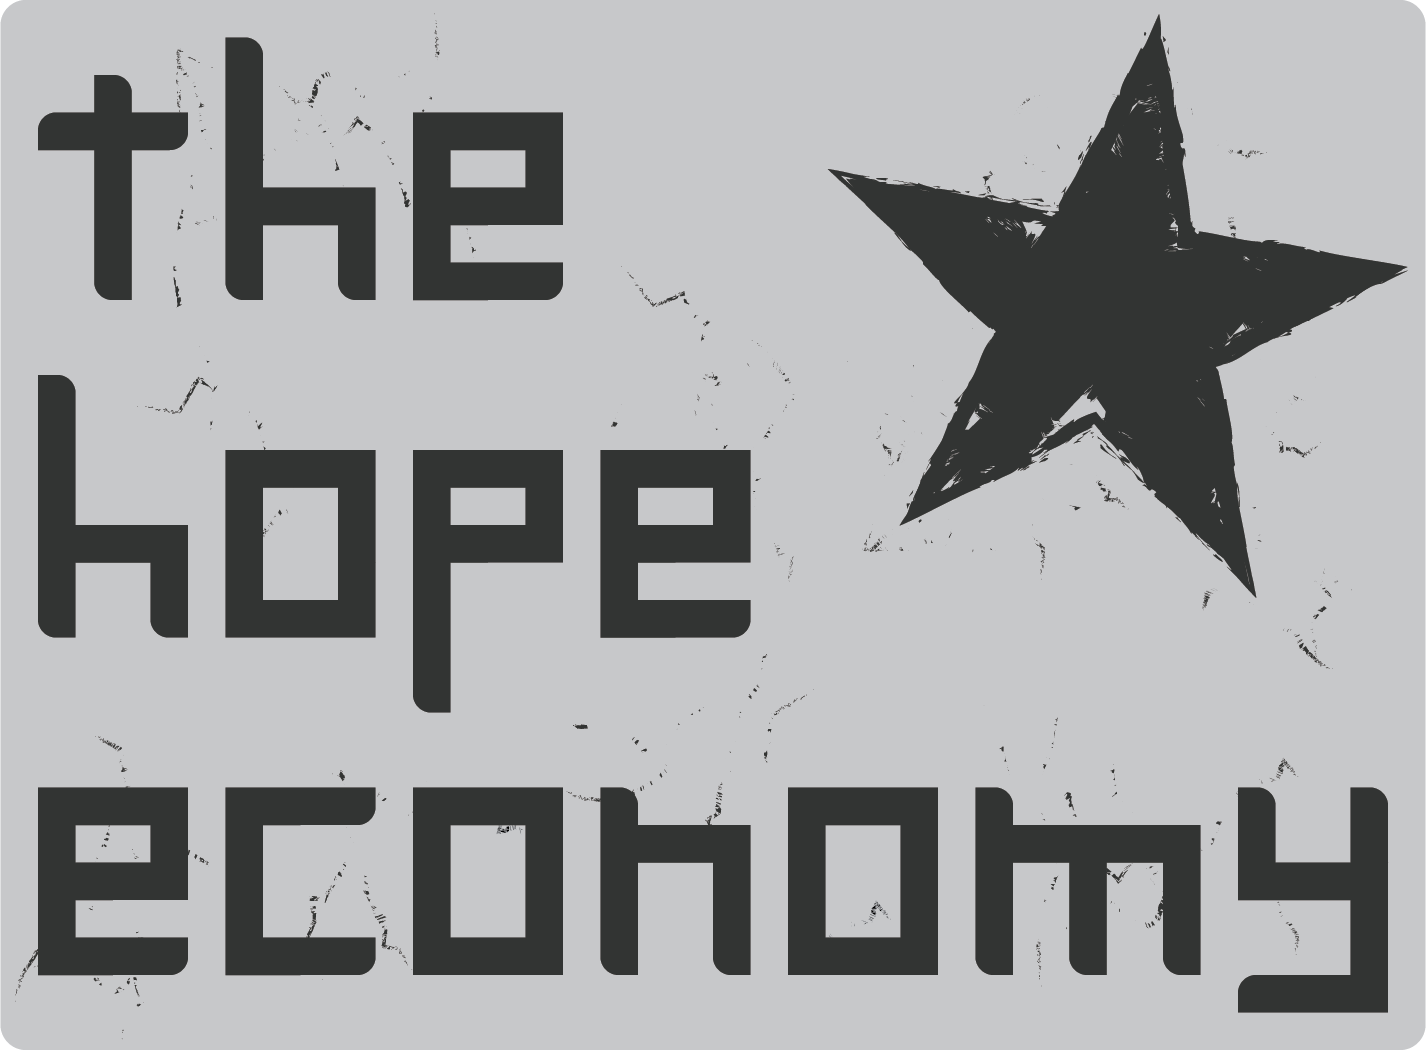 the hope economy